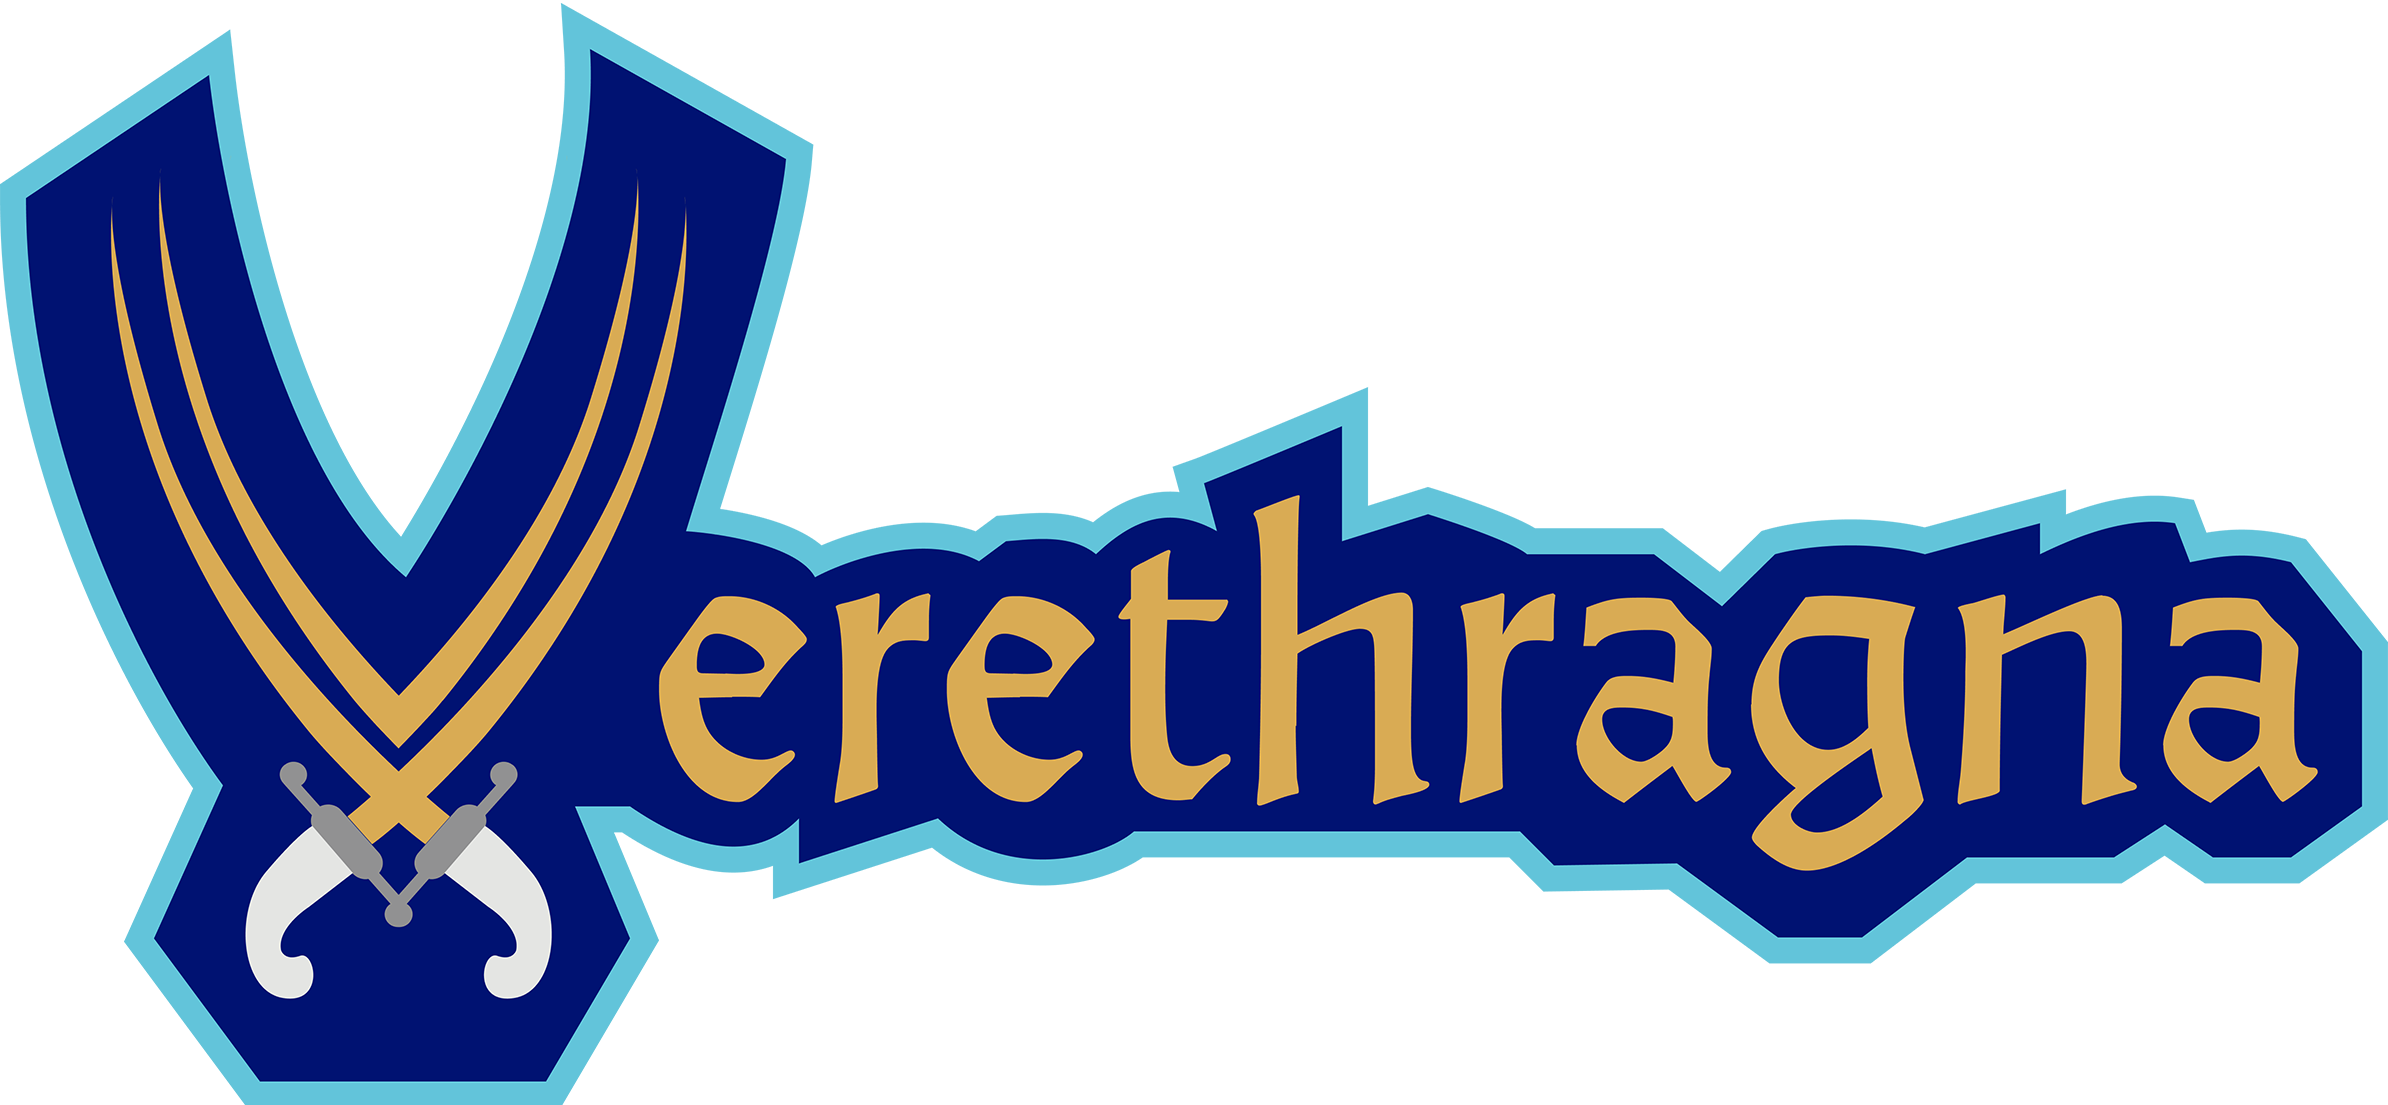 (unfinished) Verethragna